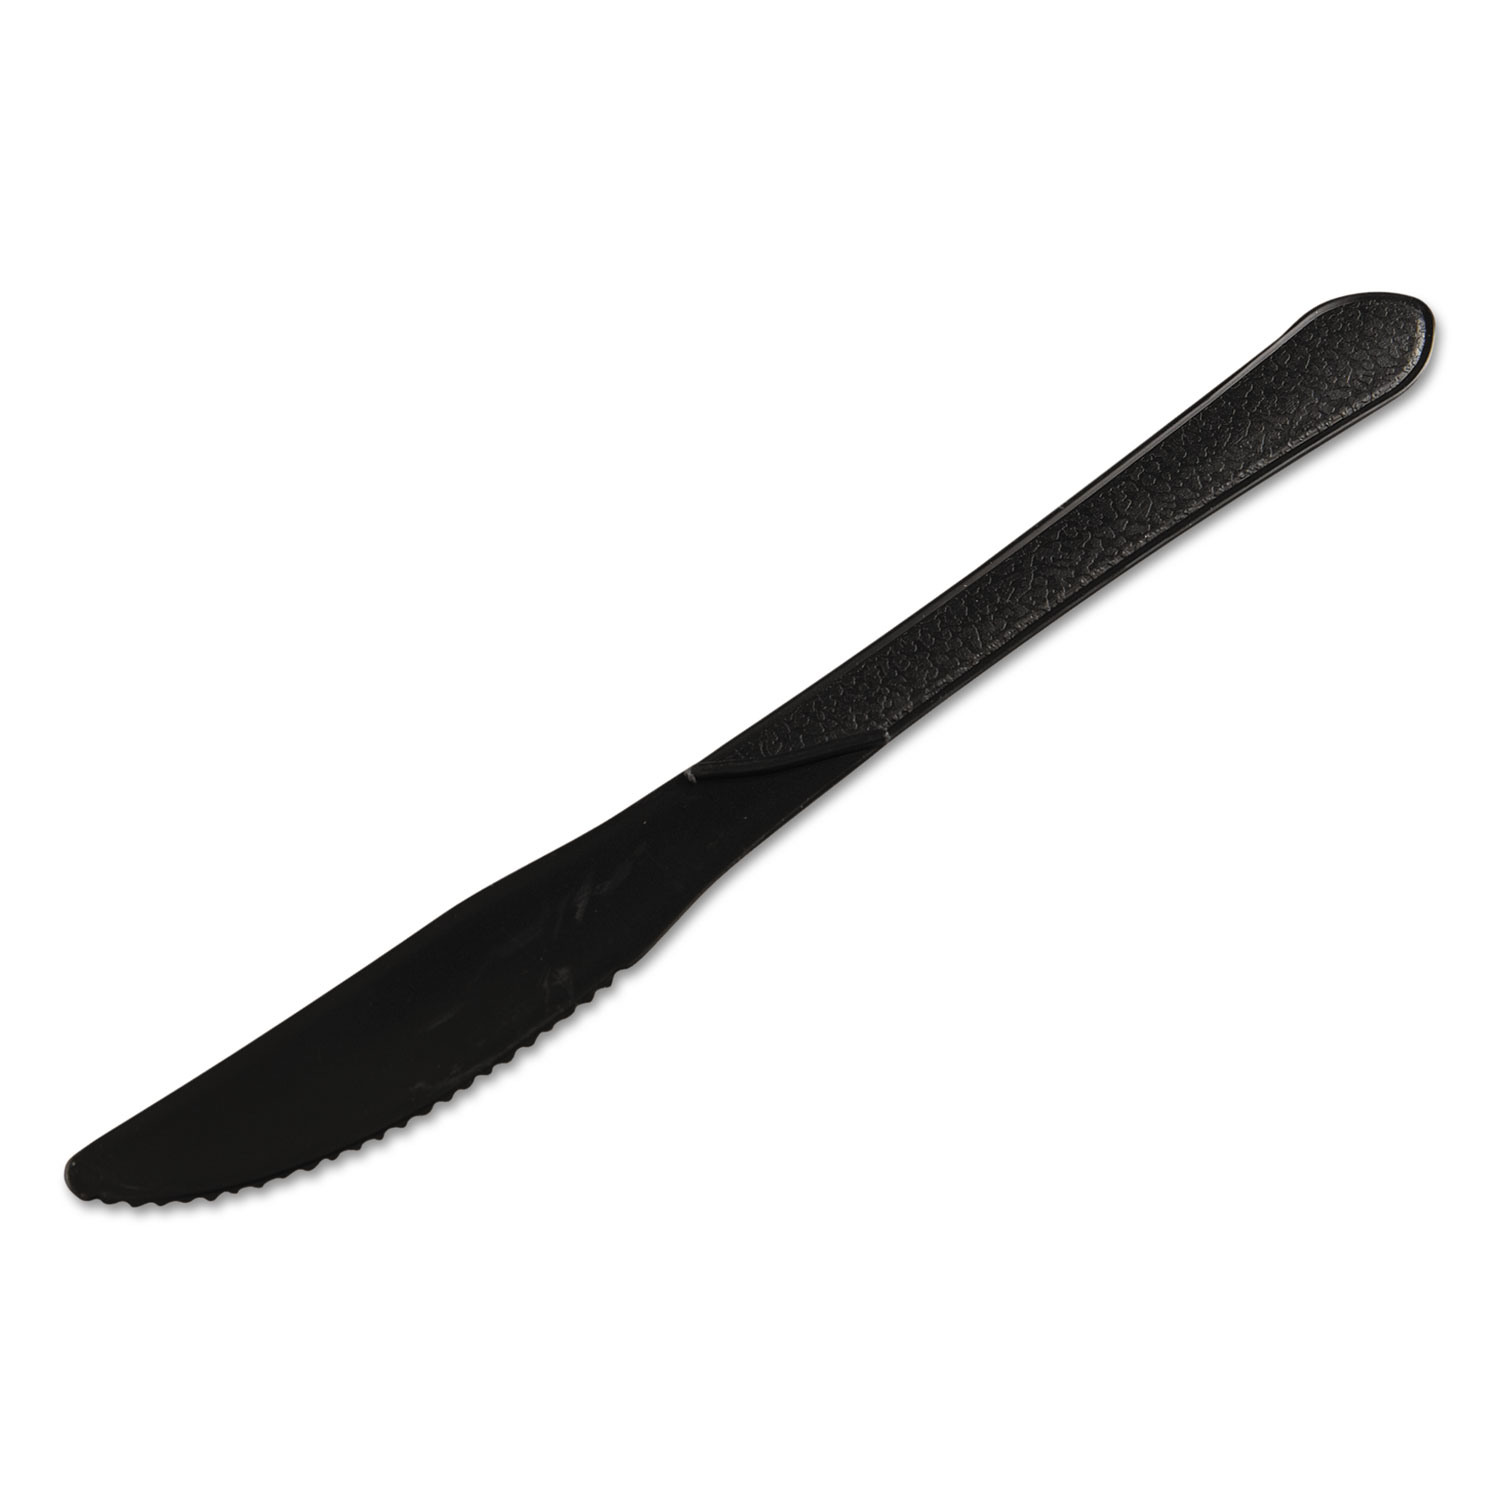  GEN GENHYBKN Heavyweight Cutlery, Knives, 7 1/4, Polypropylene, Black, 1000/Carton (GENHYBKN) 